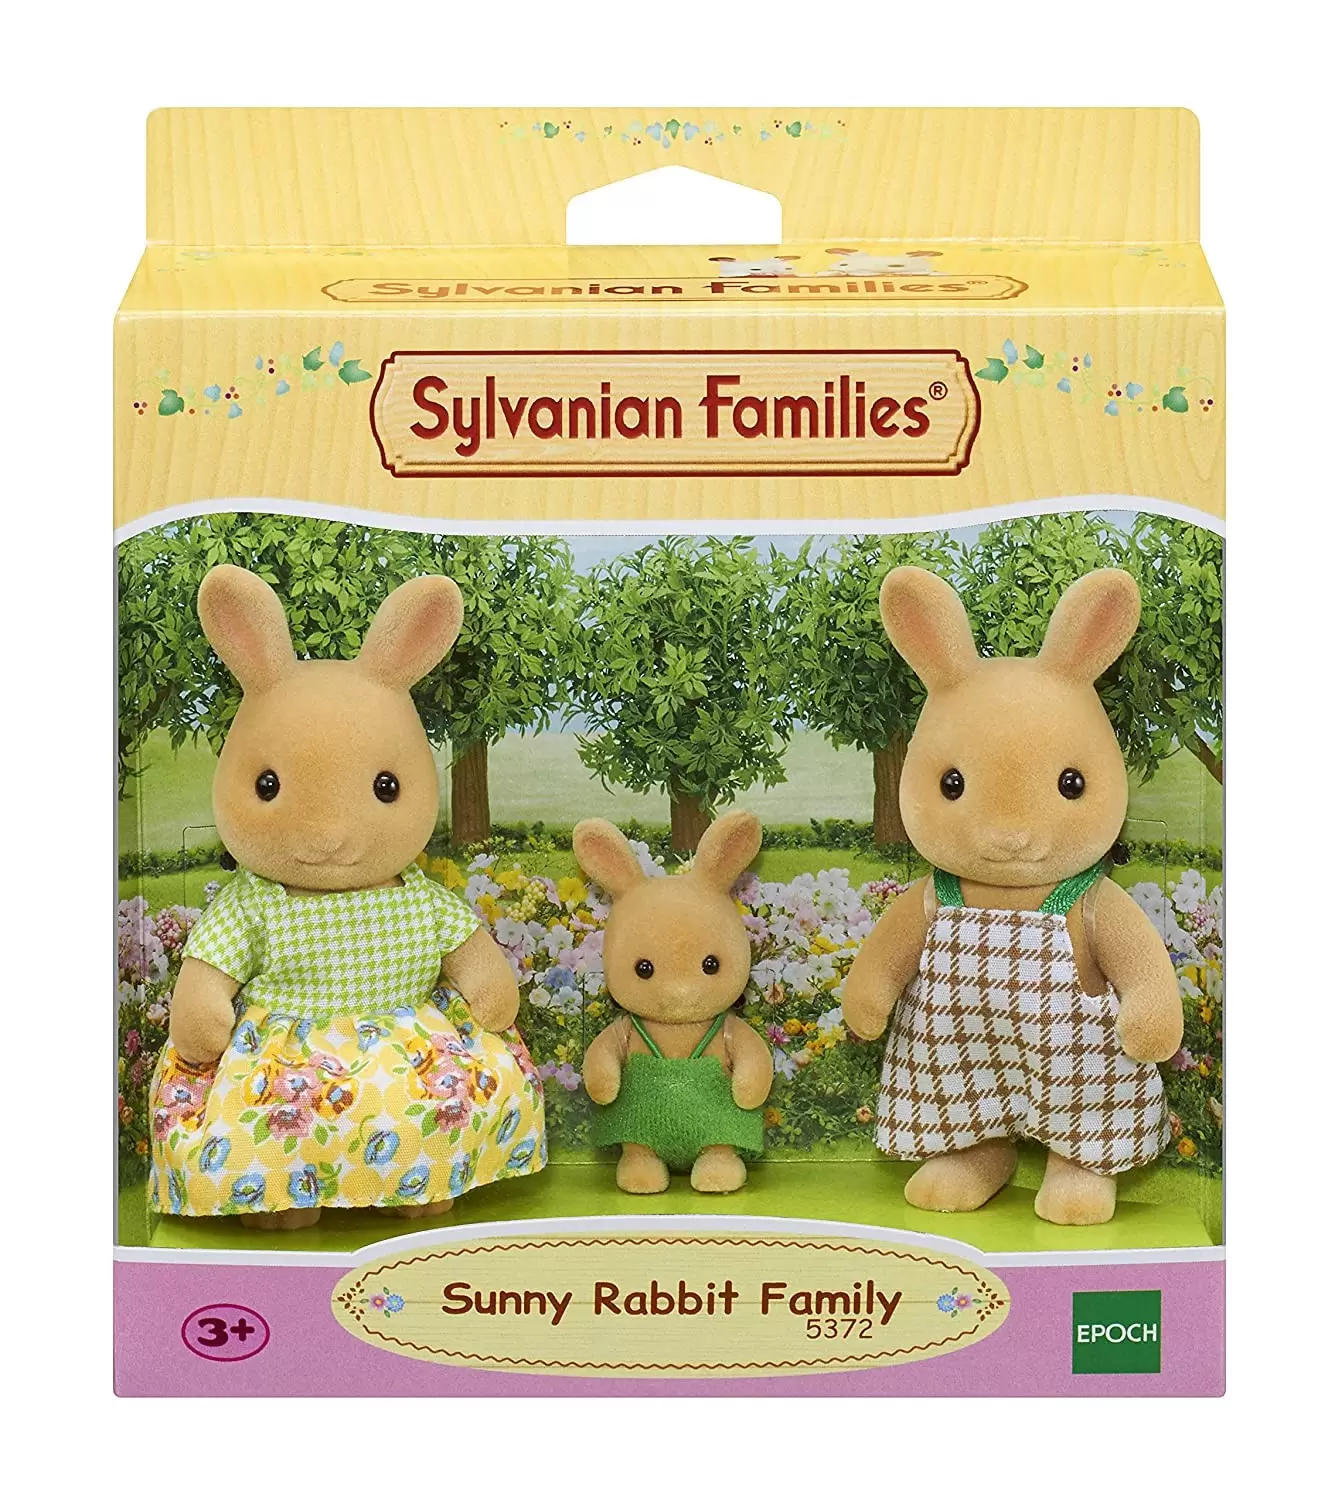 Sylvanian Families (Europe) - Sunny Rabbit Family